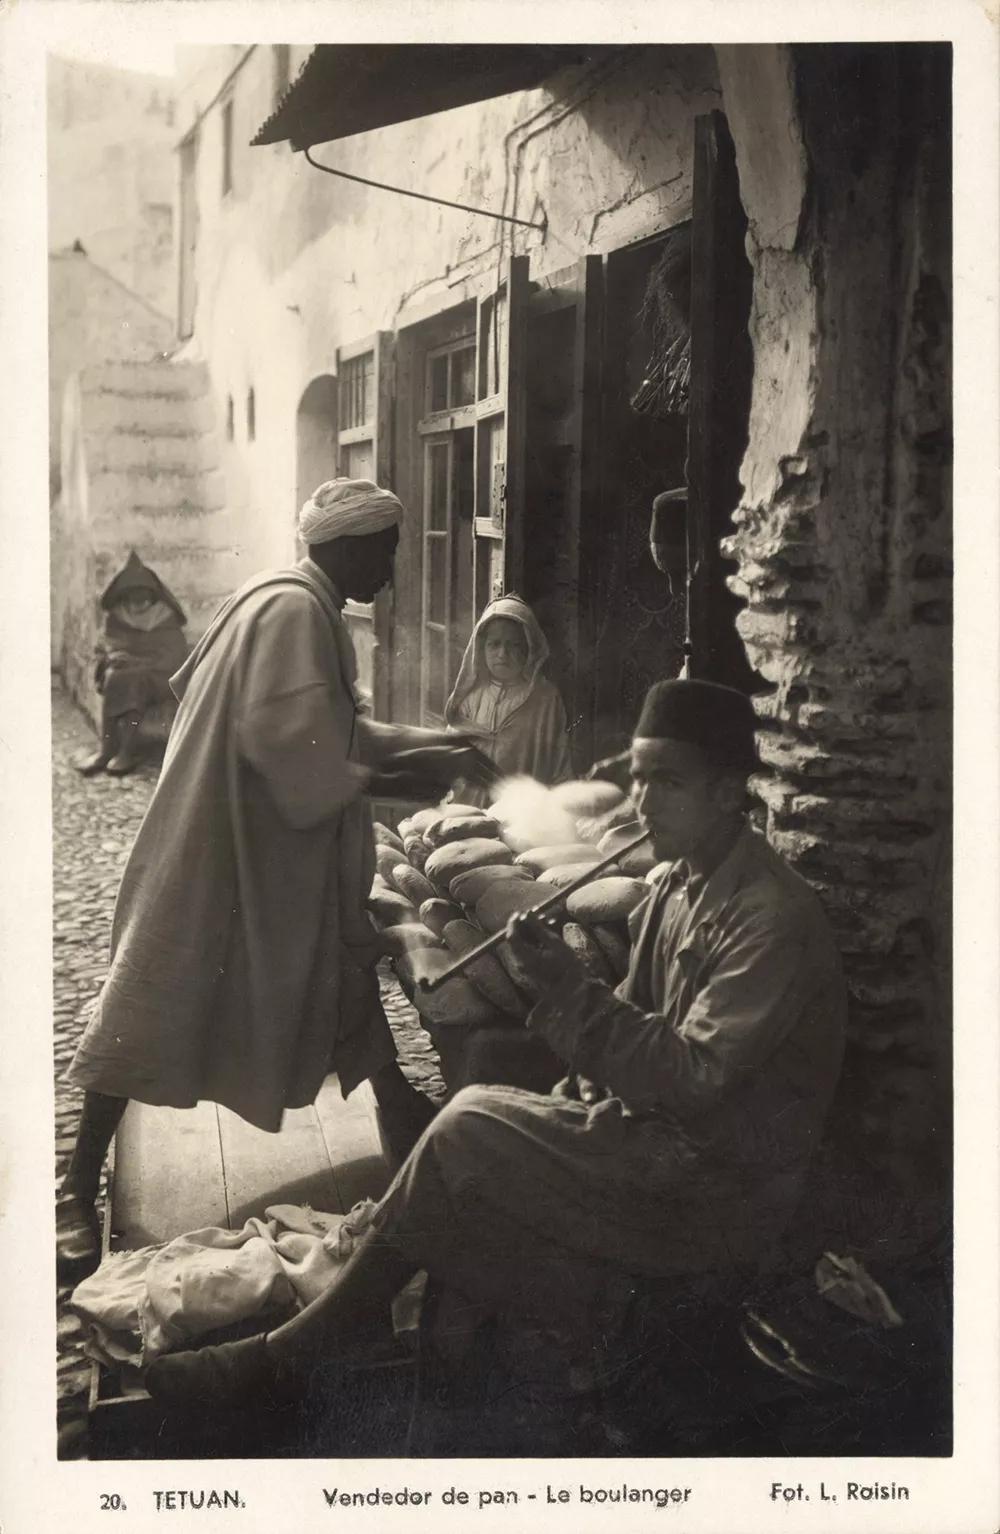 Tetuan. Vendedor de pan y fumador de kif  de Lucien Roisin. Tarjeta postal, c. 1920, colección particular